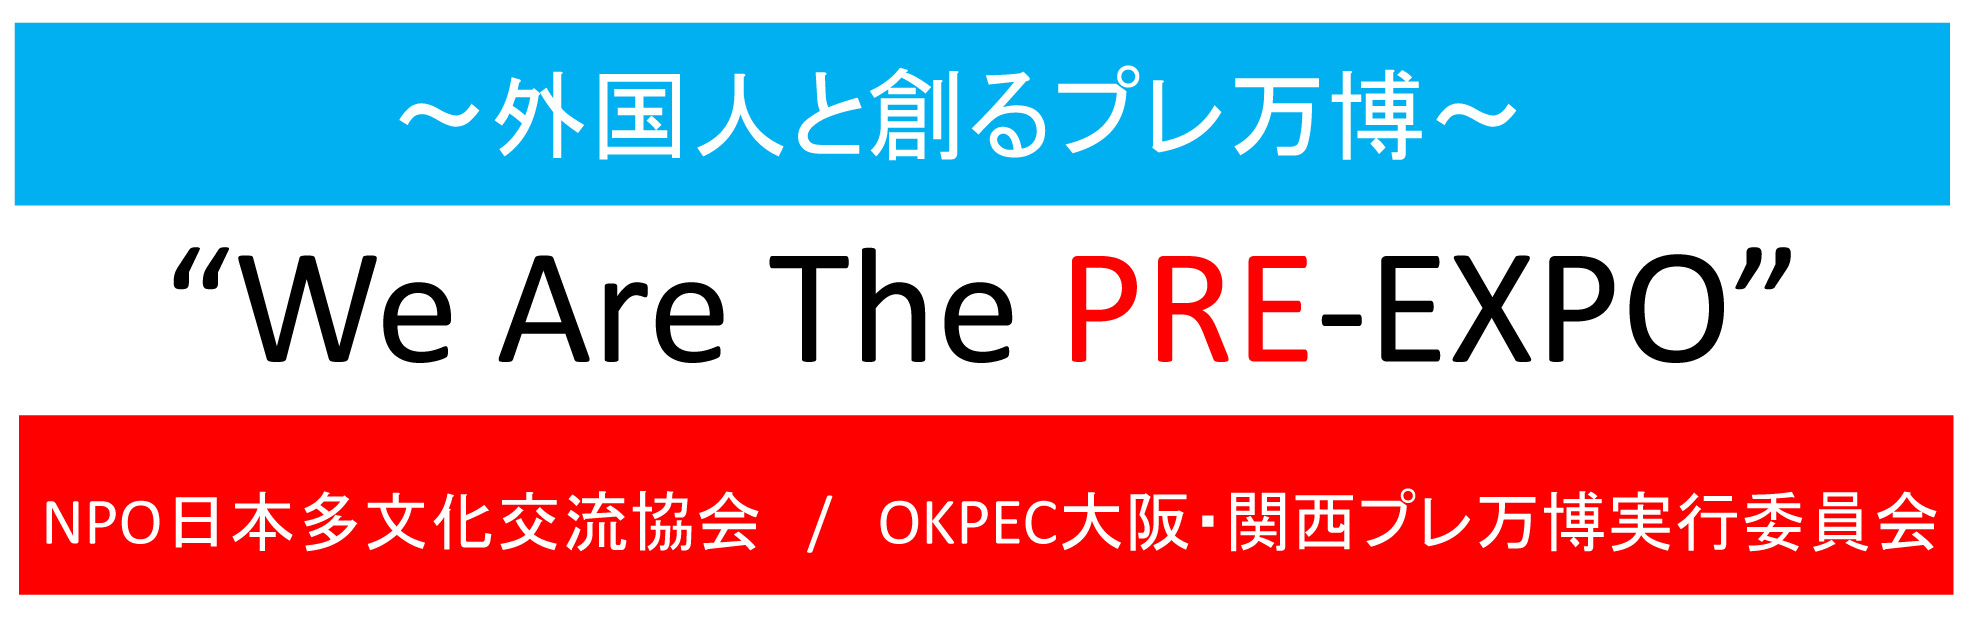 OlƑnuE֐vv`We Are The PRE-EXPO`@LbNItp[eBs12/4JÁI